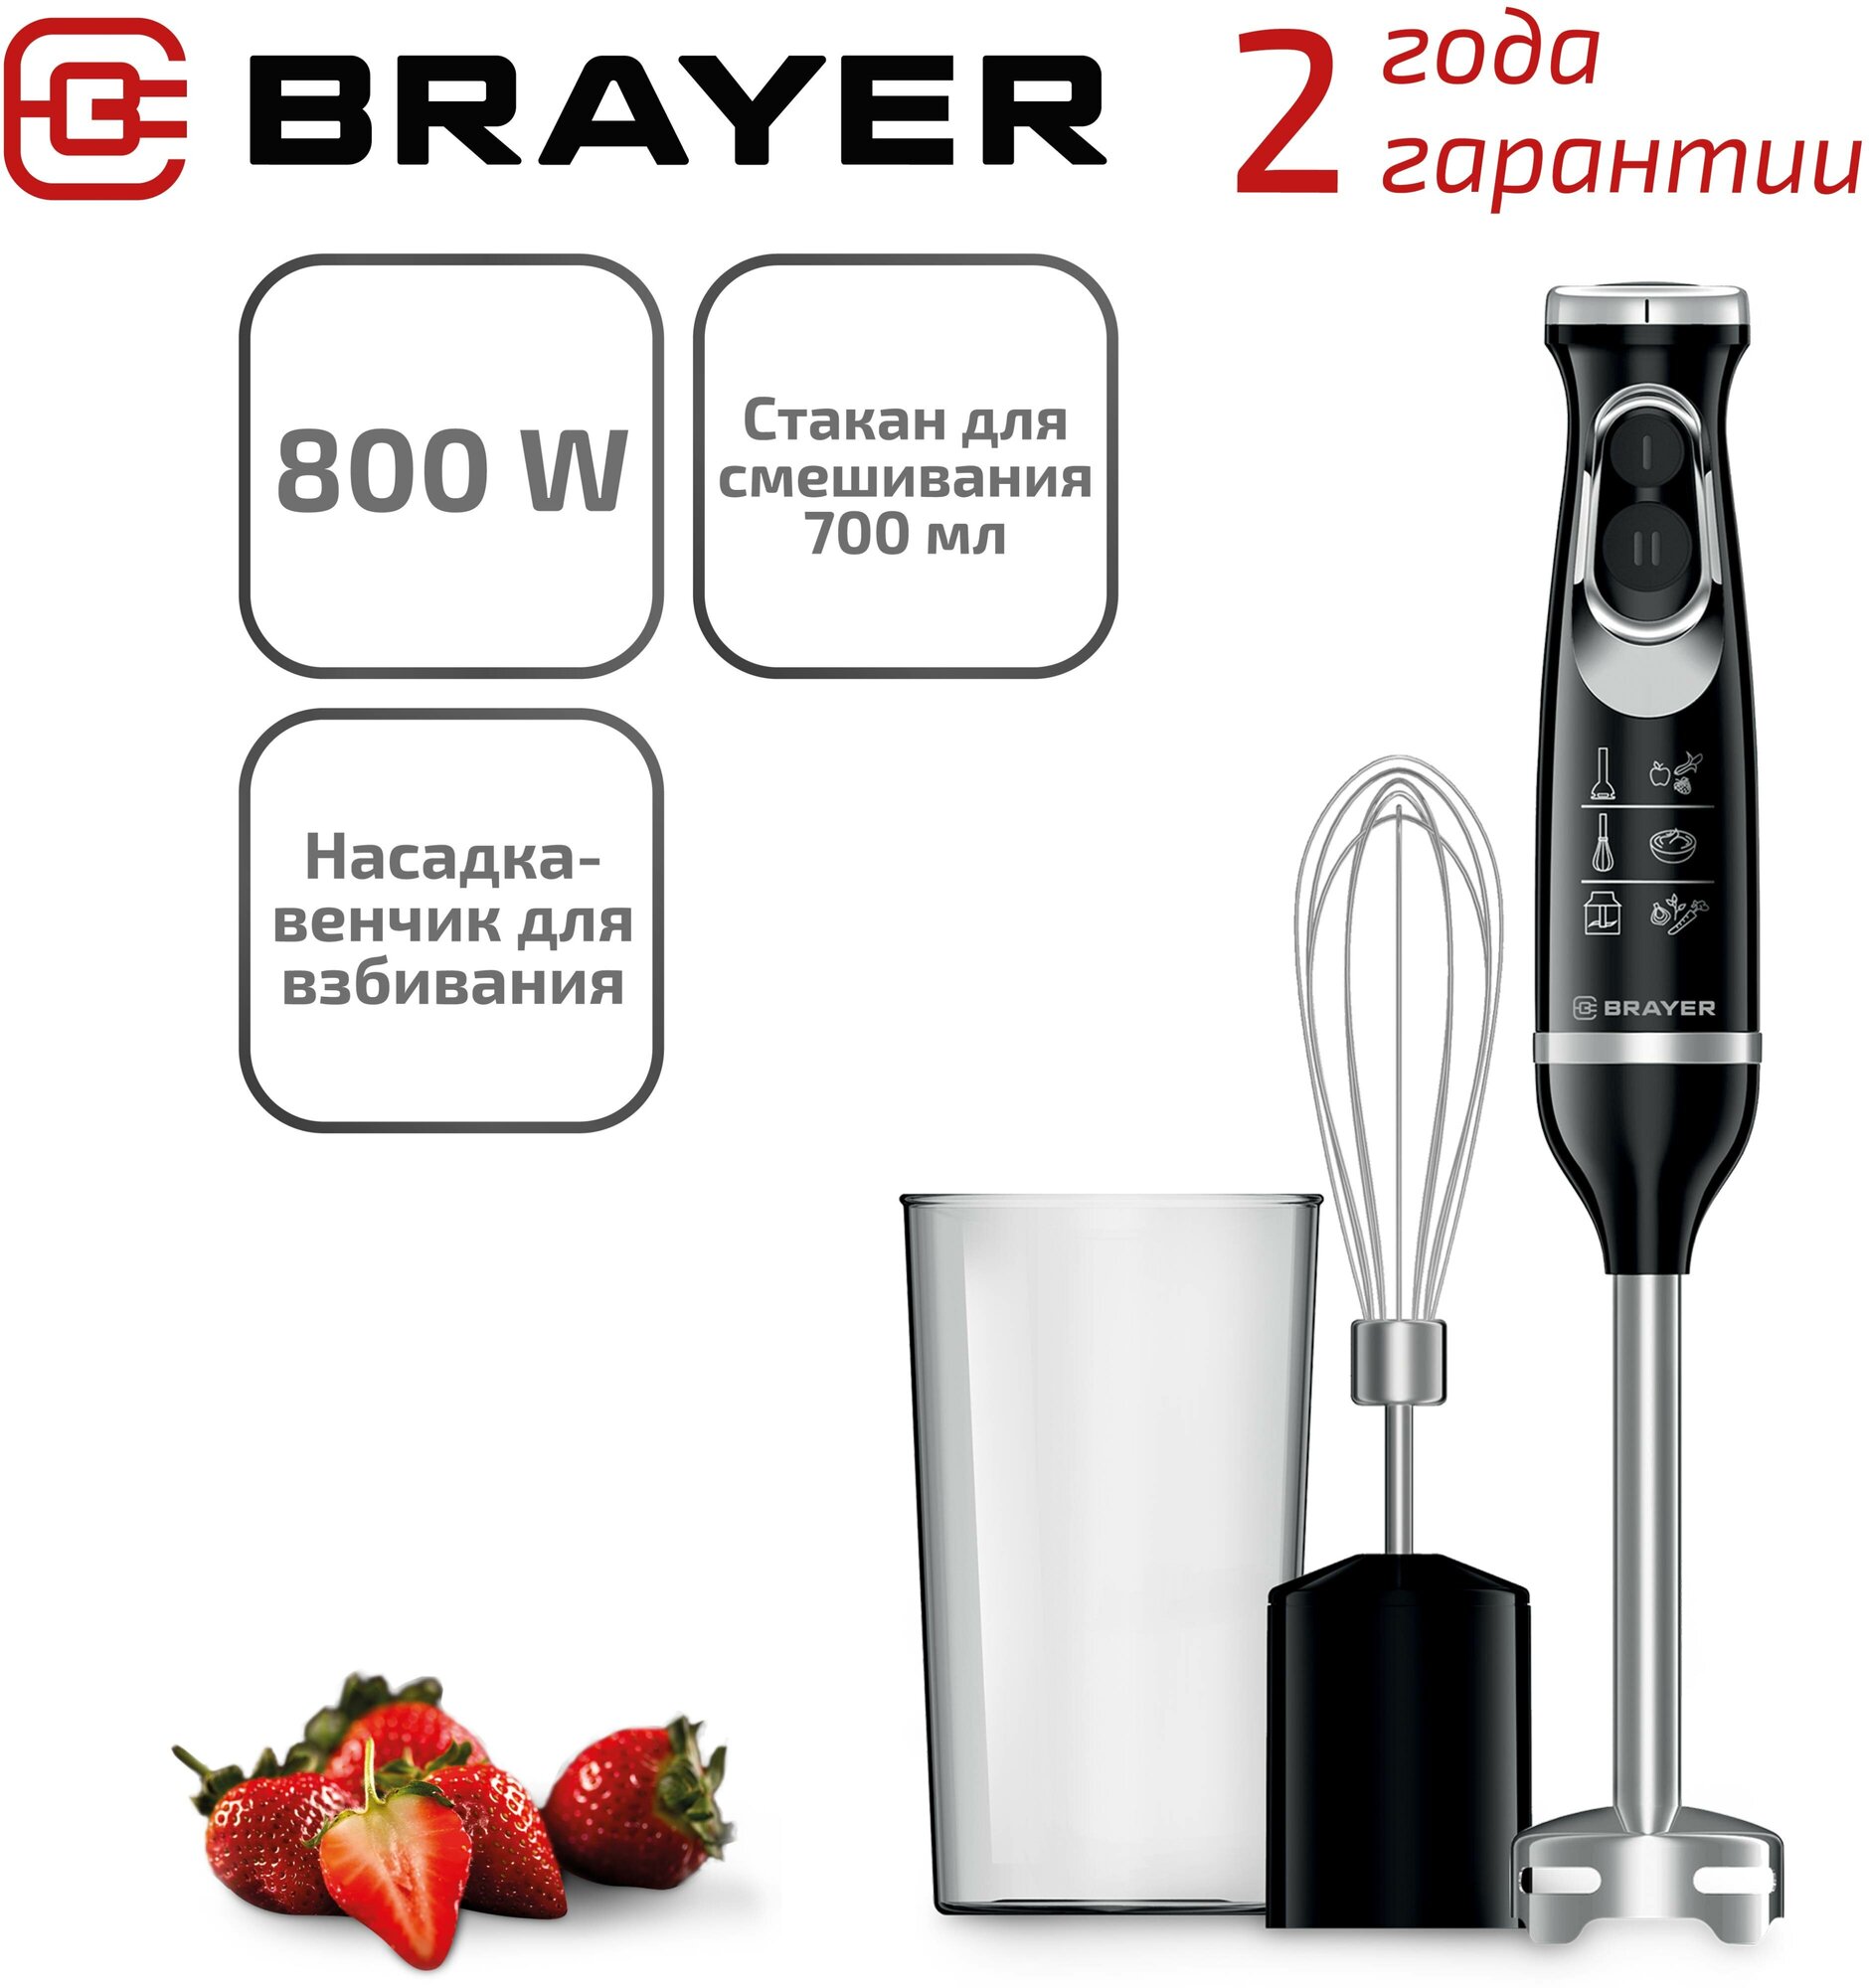 Блендер погружной BRAYER BR1241, 800 Вт, 2 скорости, 2 насадки, стакан, черный /Квант продажи 1 ед./